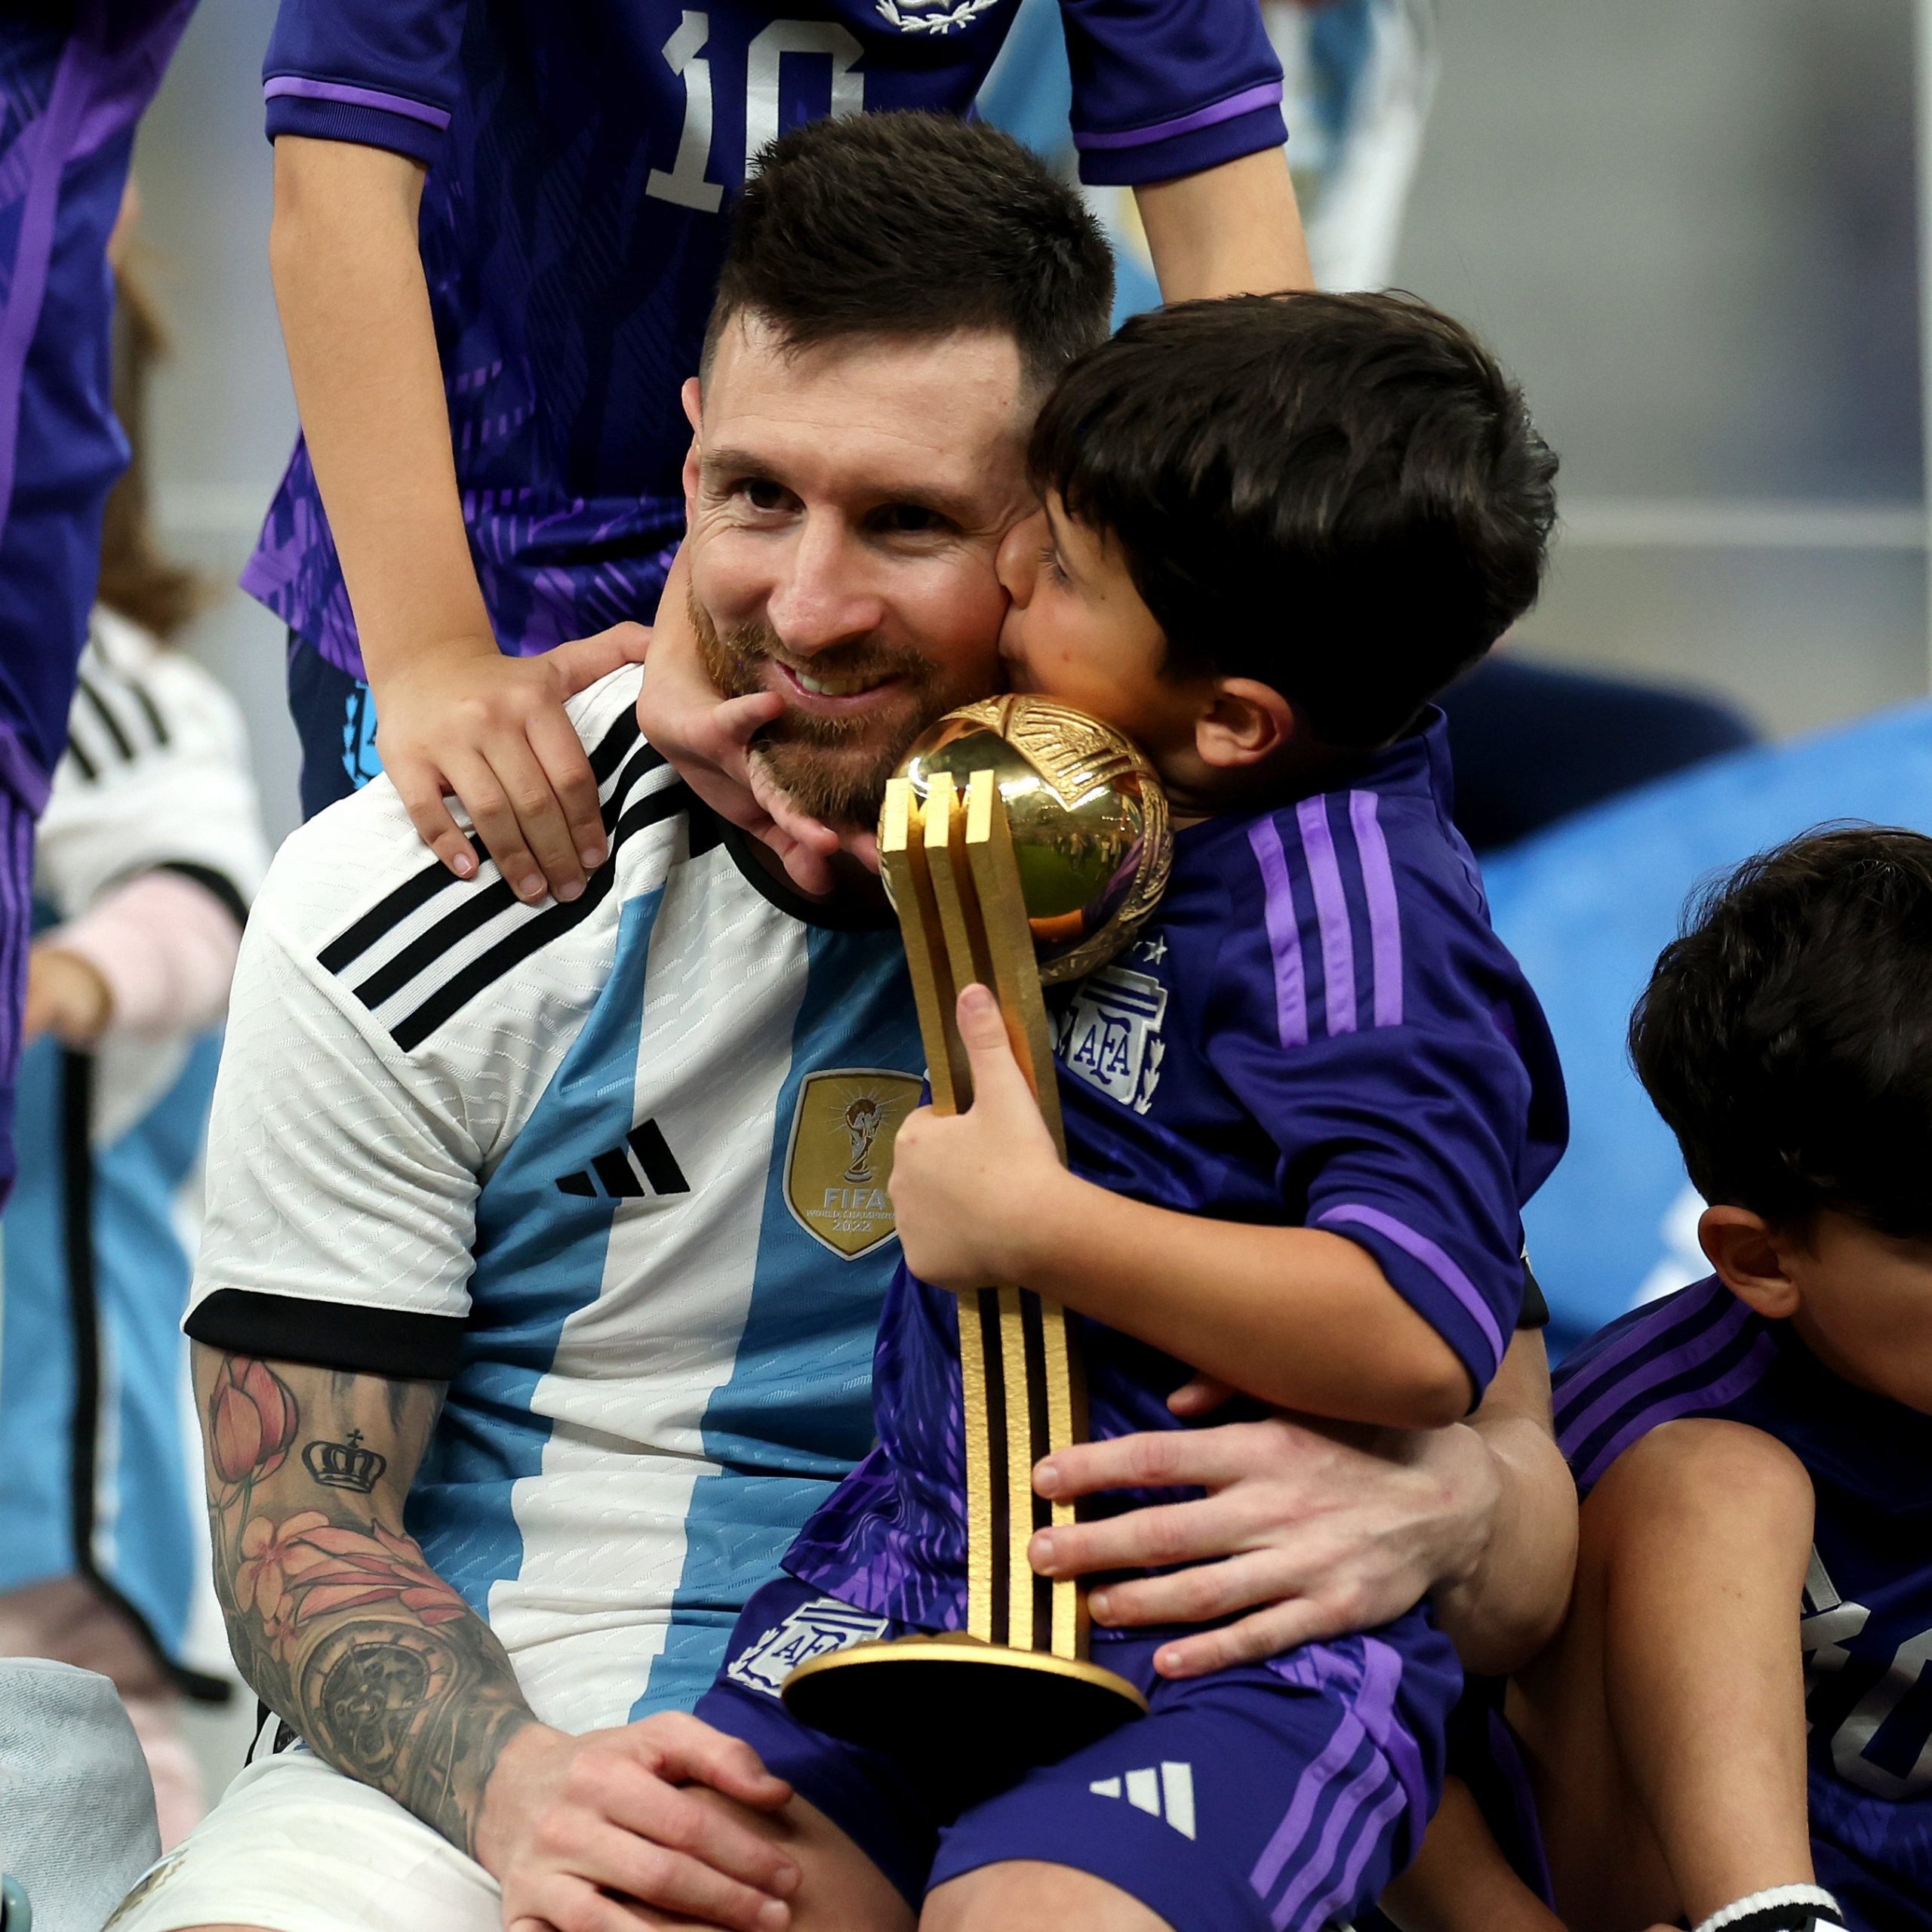 Messi é favorito para levar prêmio Fifa The Best de melhor jogador;  Richarlison concorre por gol mais bonito